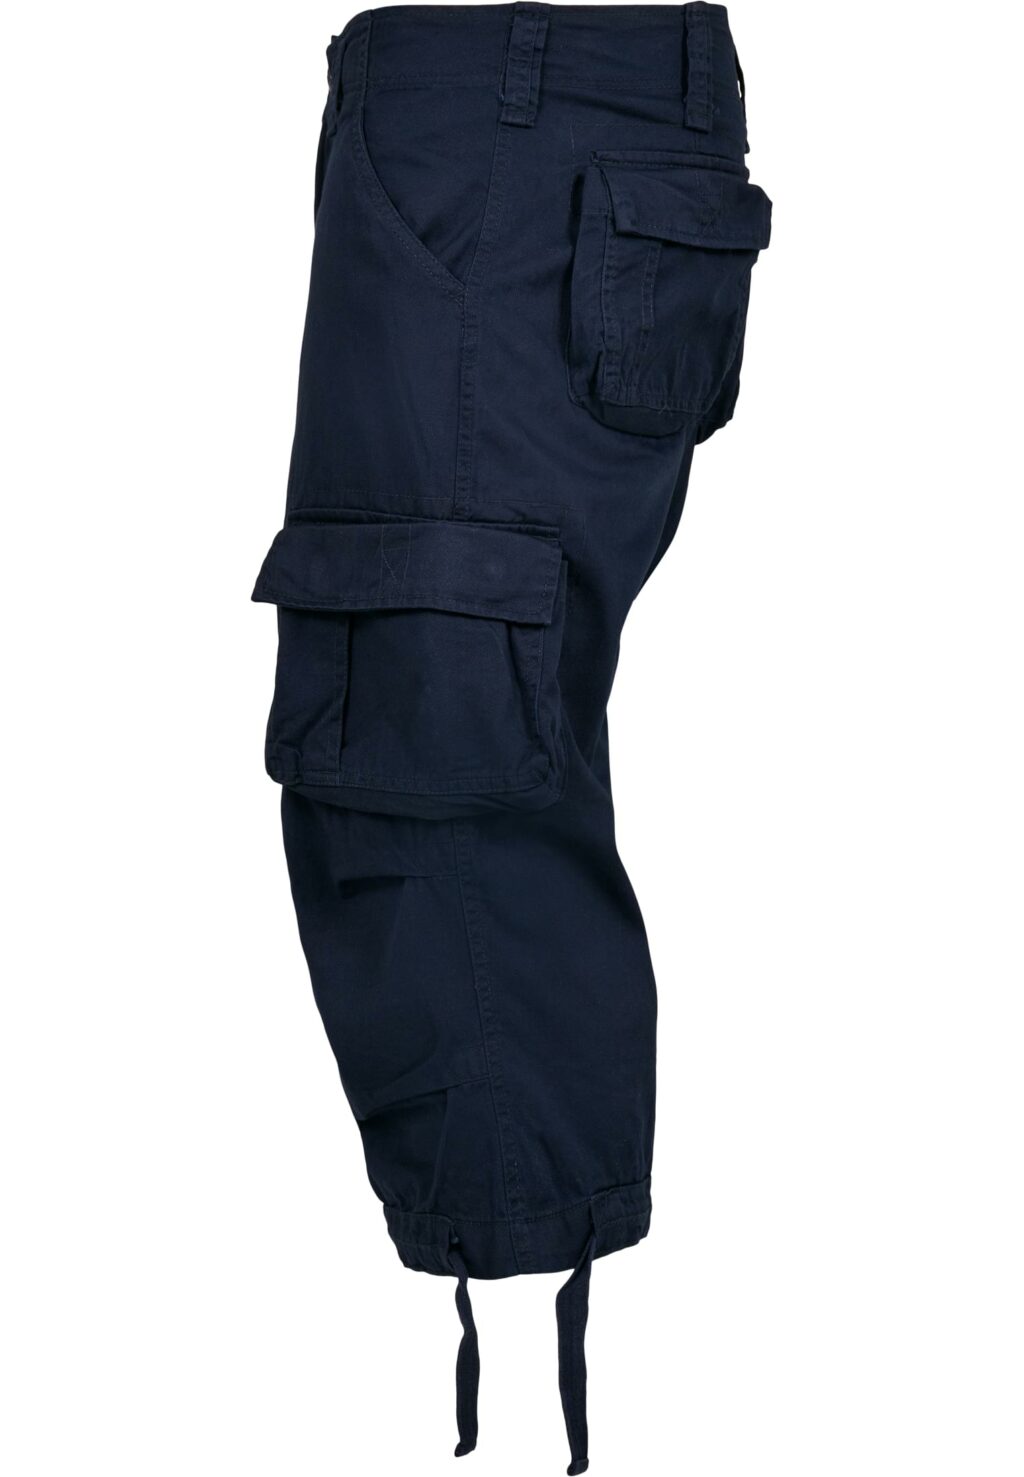 Brandit Urban Legend Cargo 3/4 Shorts navy BD2013